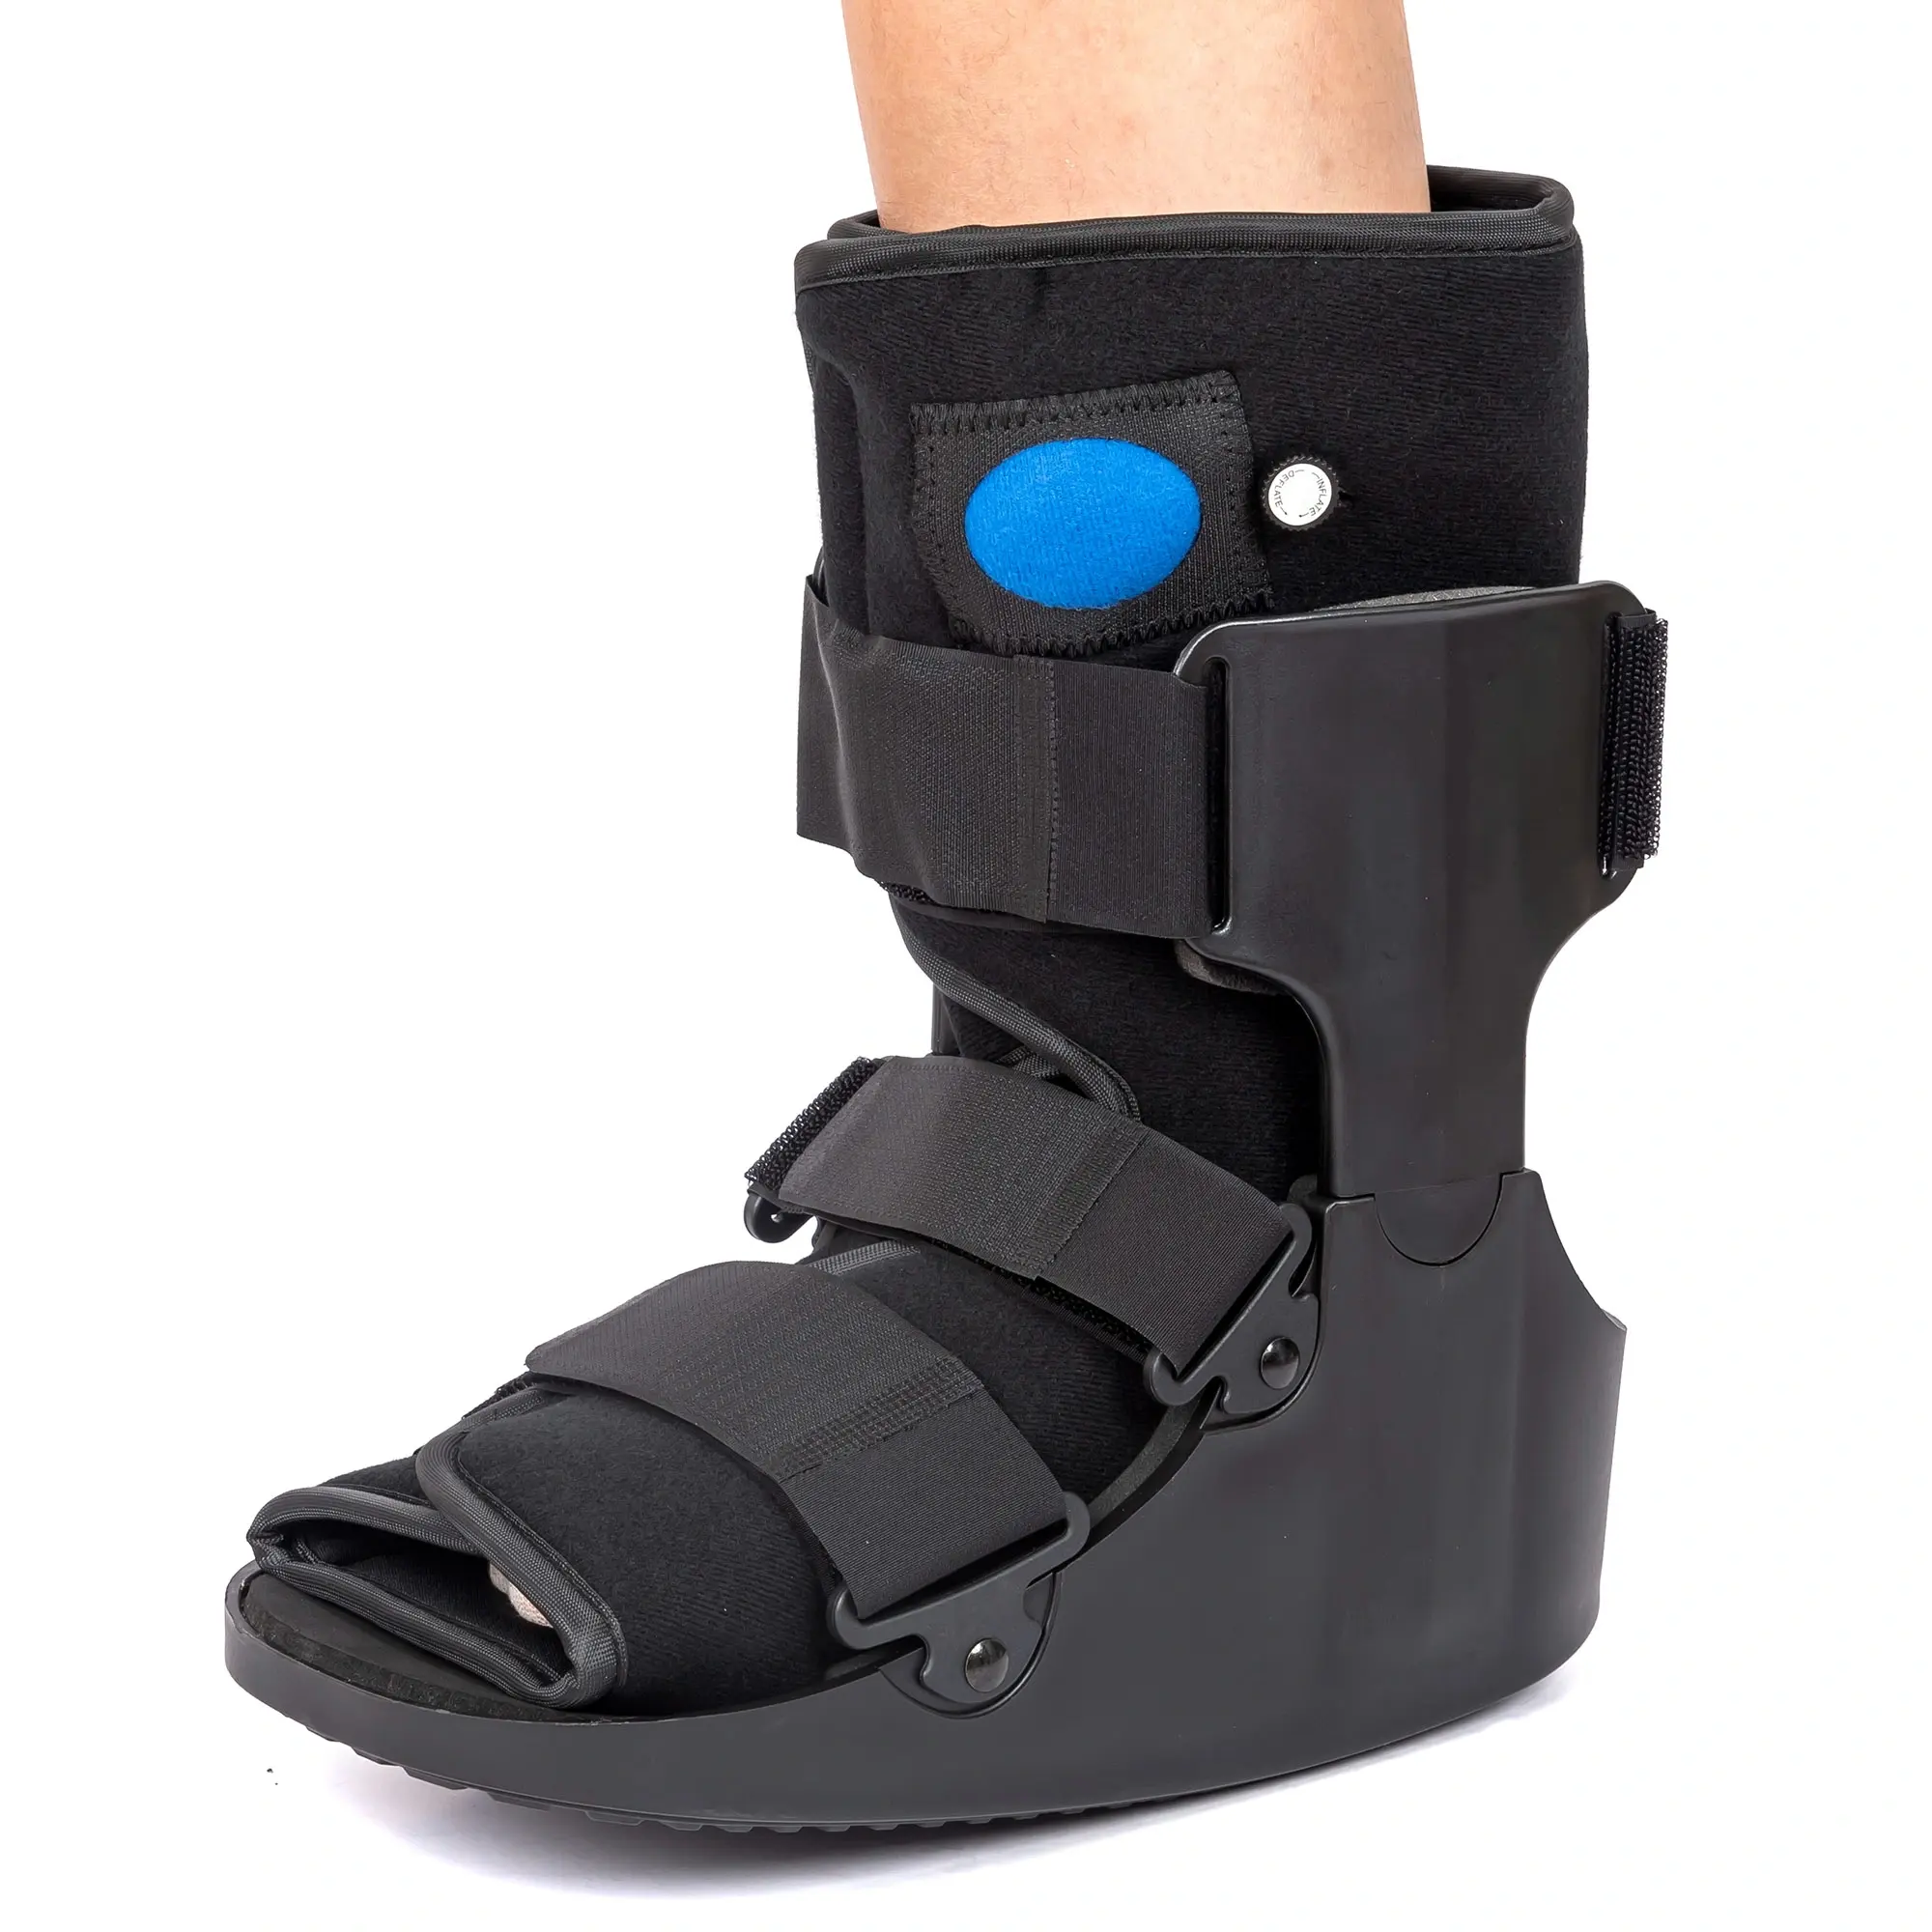 Support de fracture stable orthopédique médical botte de marche pneumatique médicale attelle cheville orthèse air cam marcheur botte